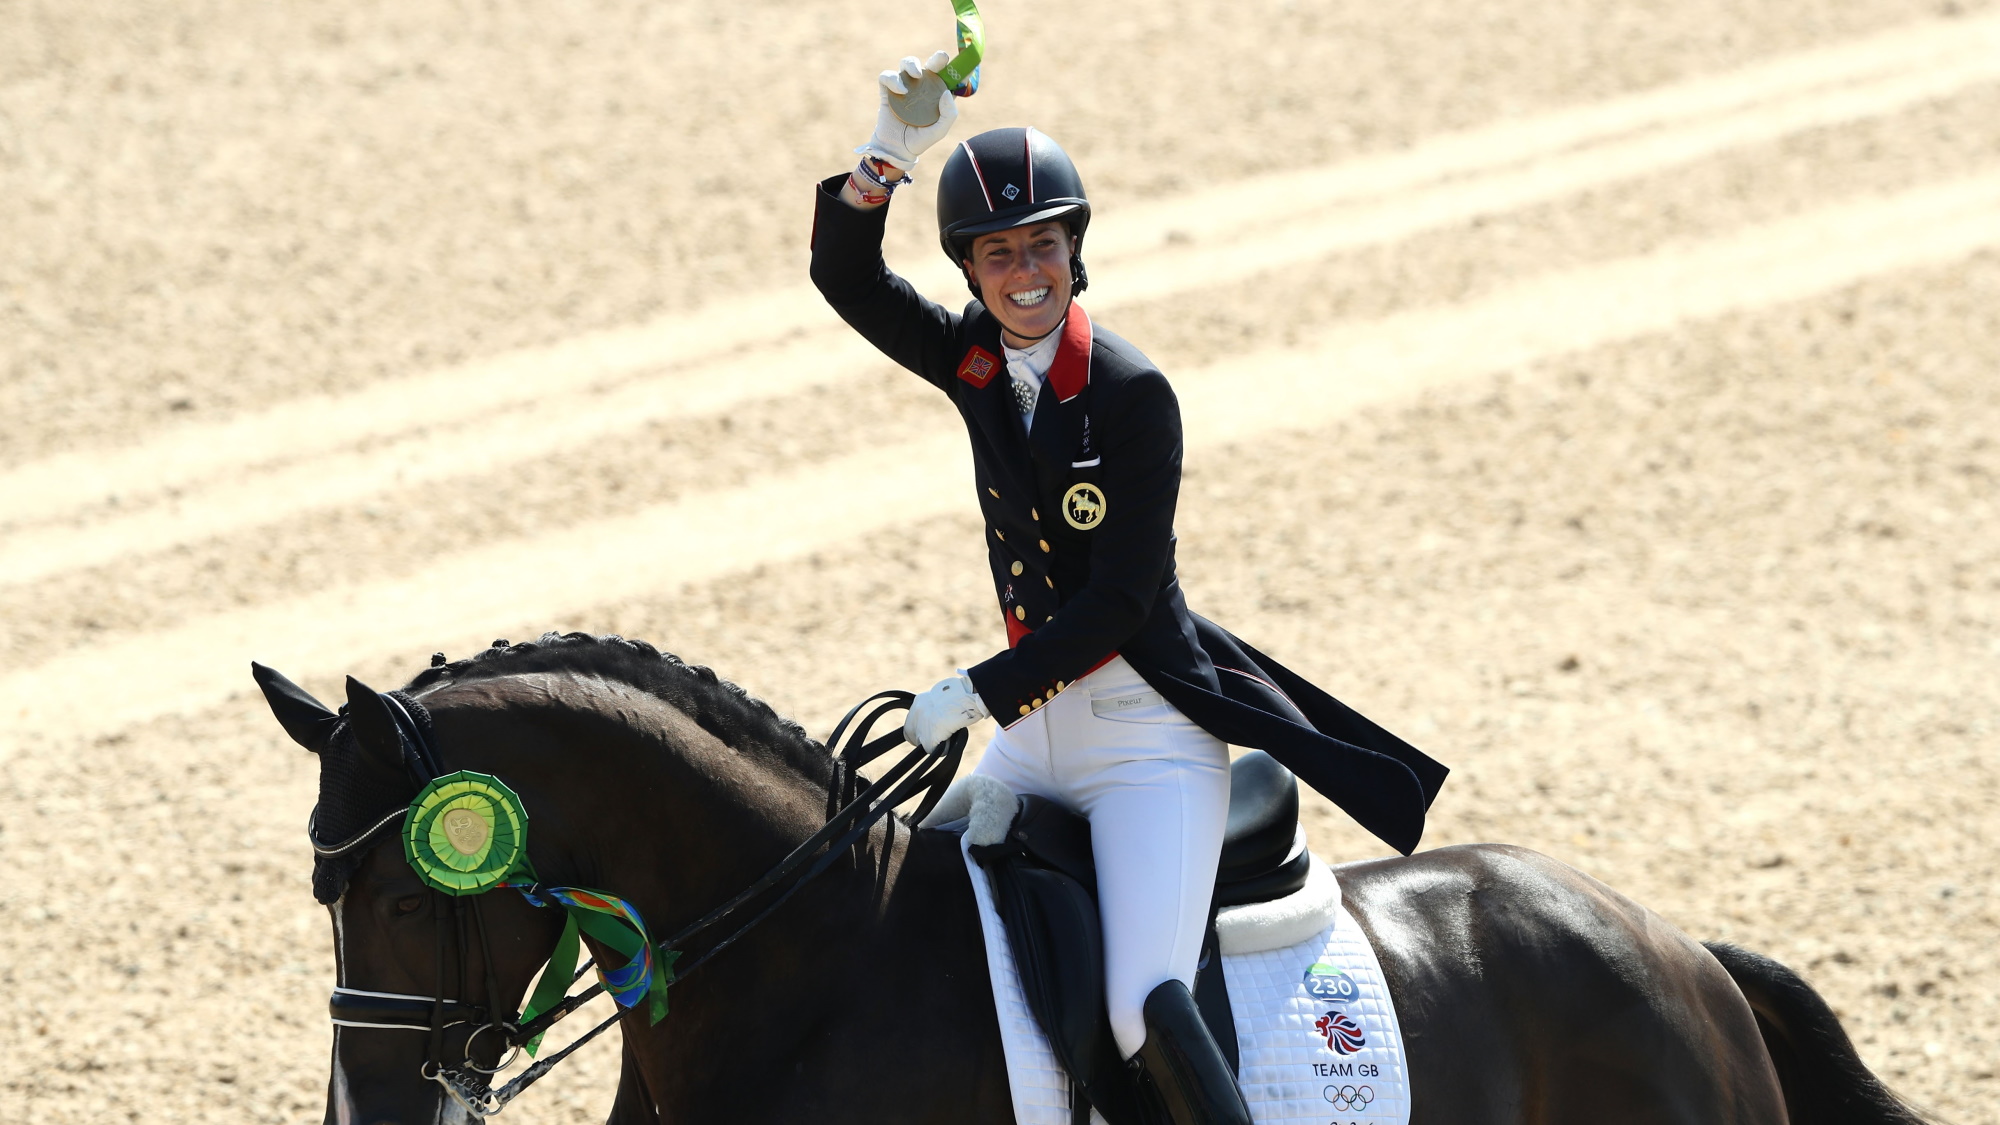 Peraih medali emas, Charlotte Dujardin dari Britania Raya menunggangi Valegro merayakannya saat upacara medali di Rio 2016